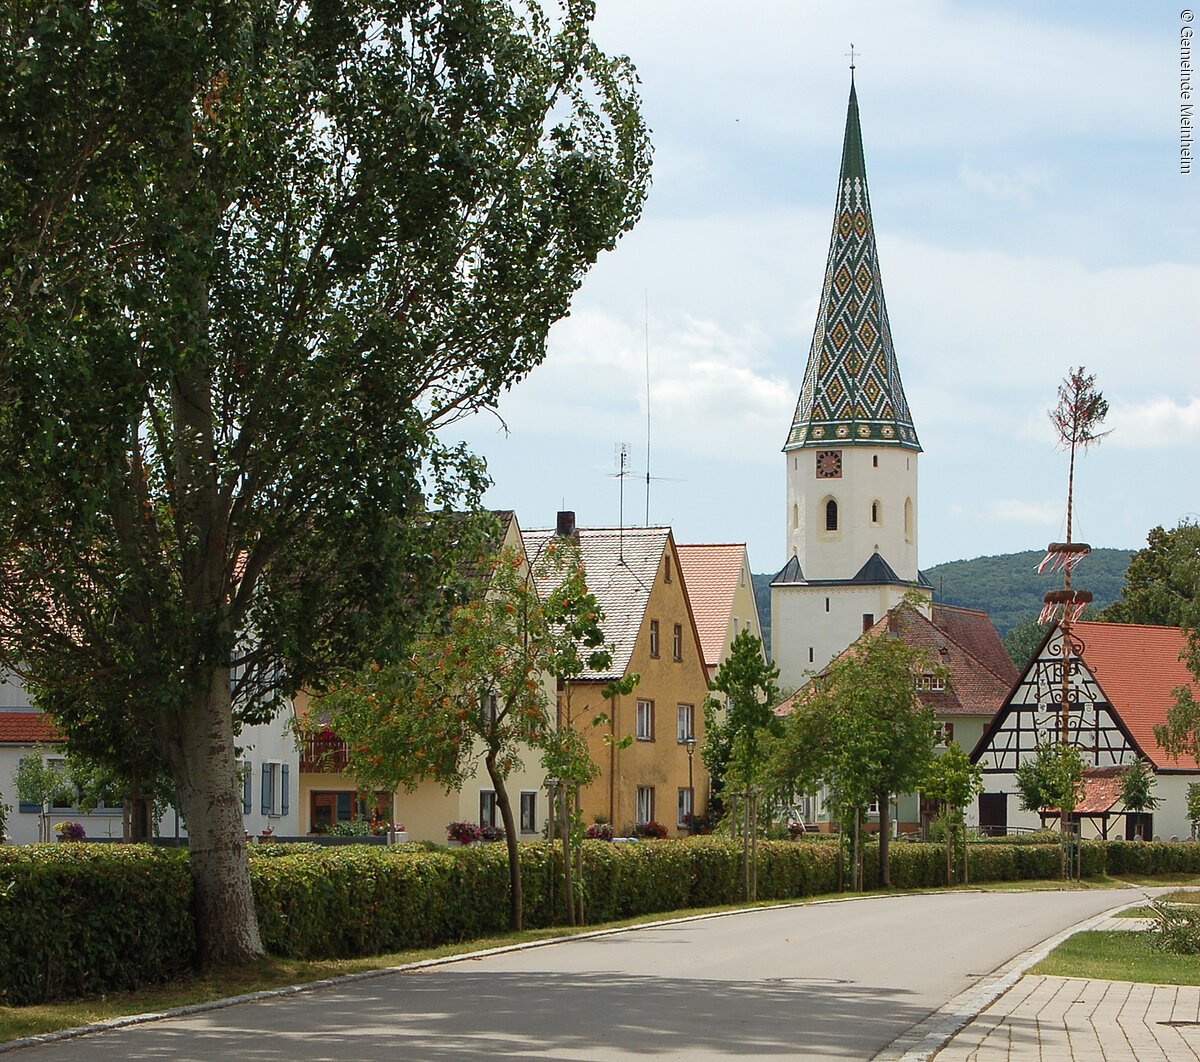 St. Wunibalkirche in Meinheim